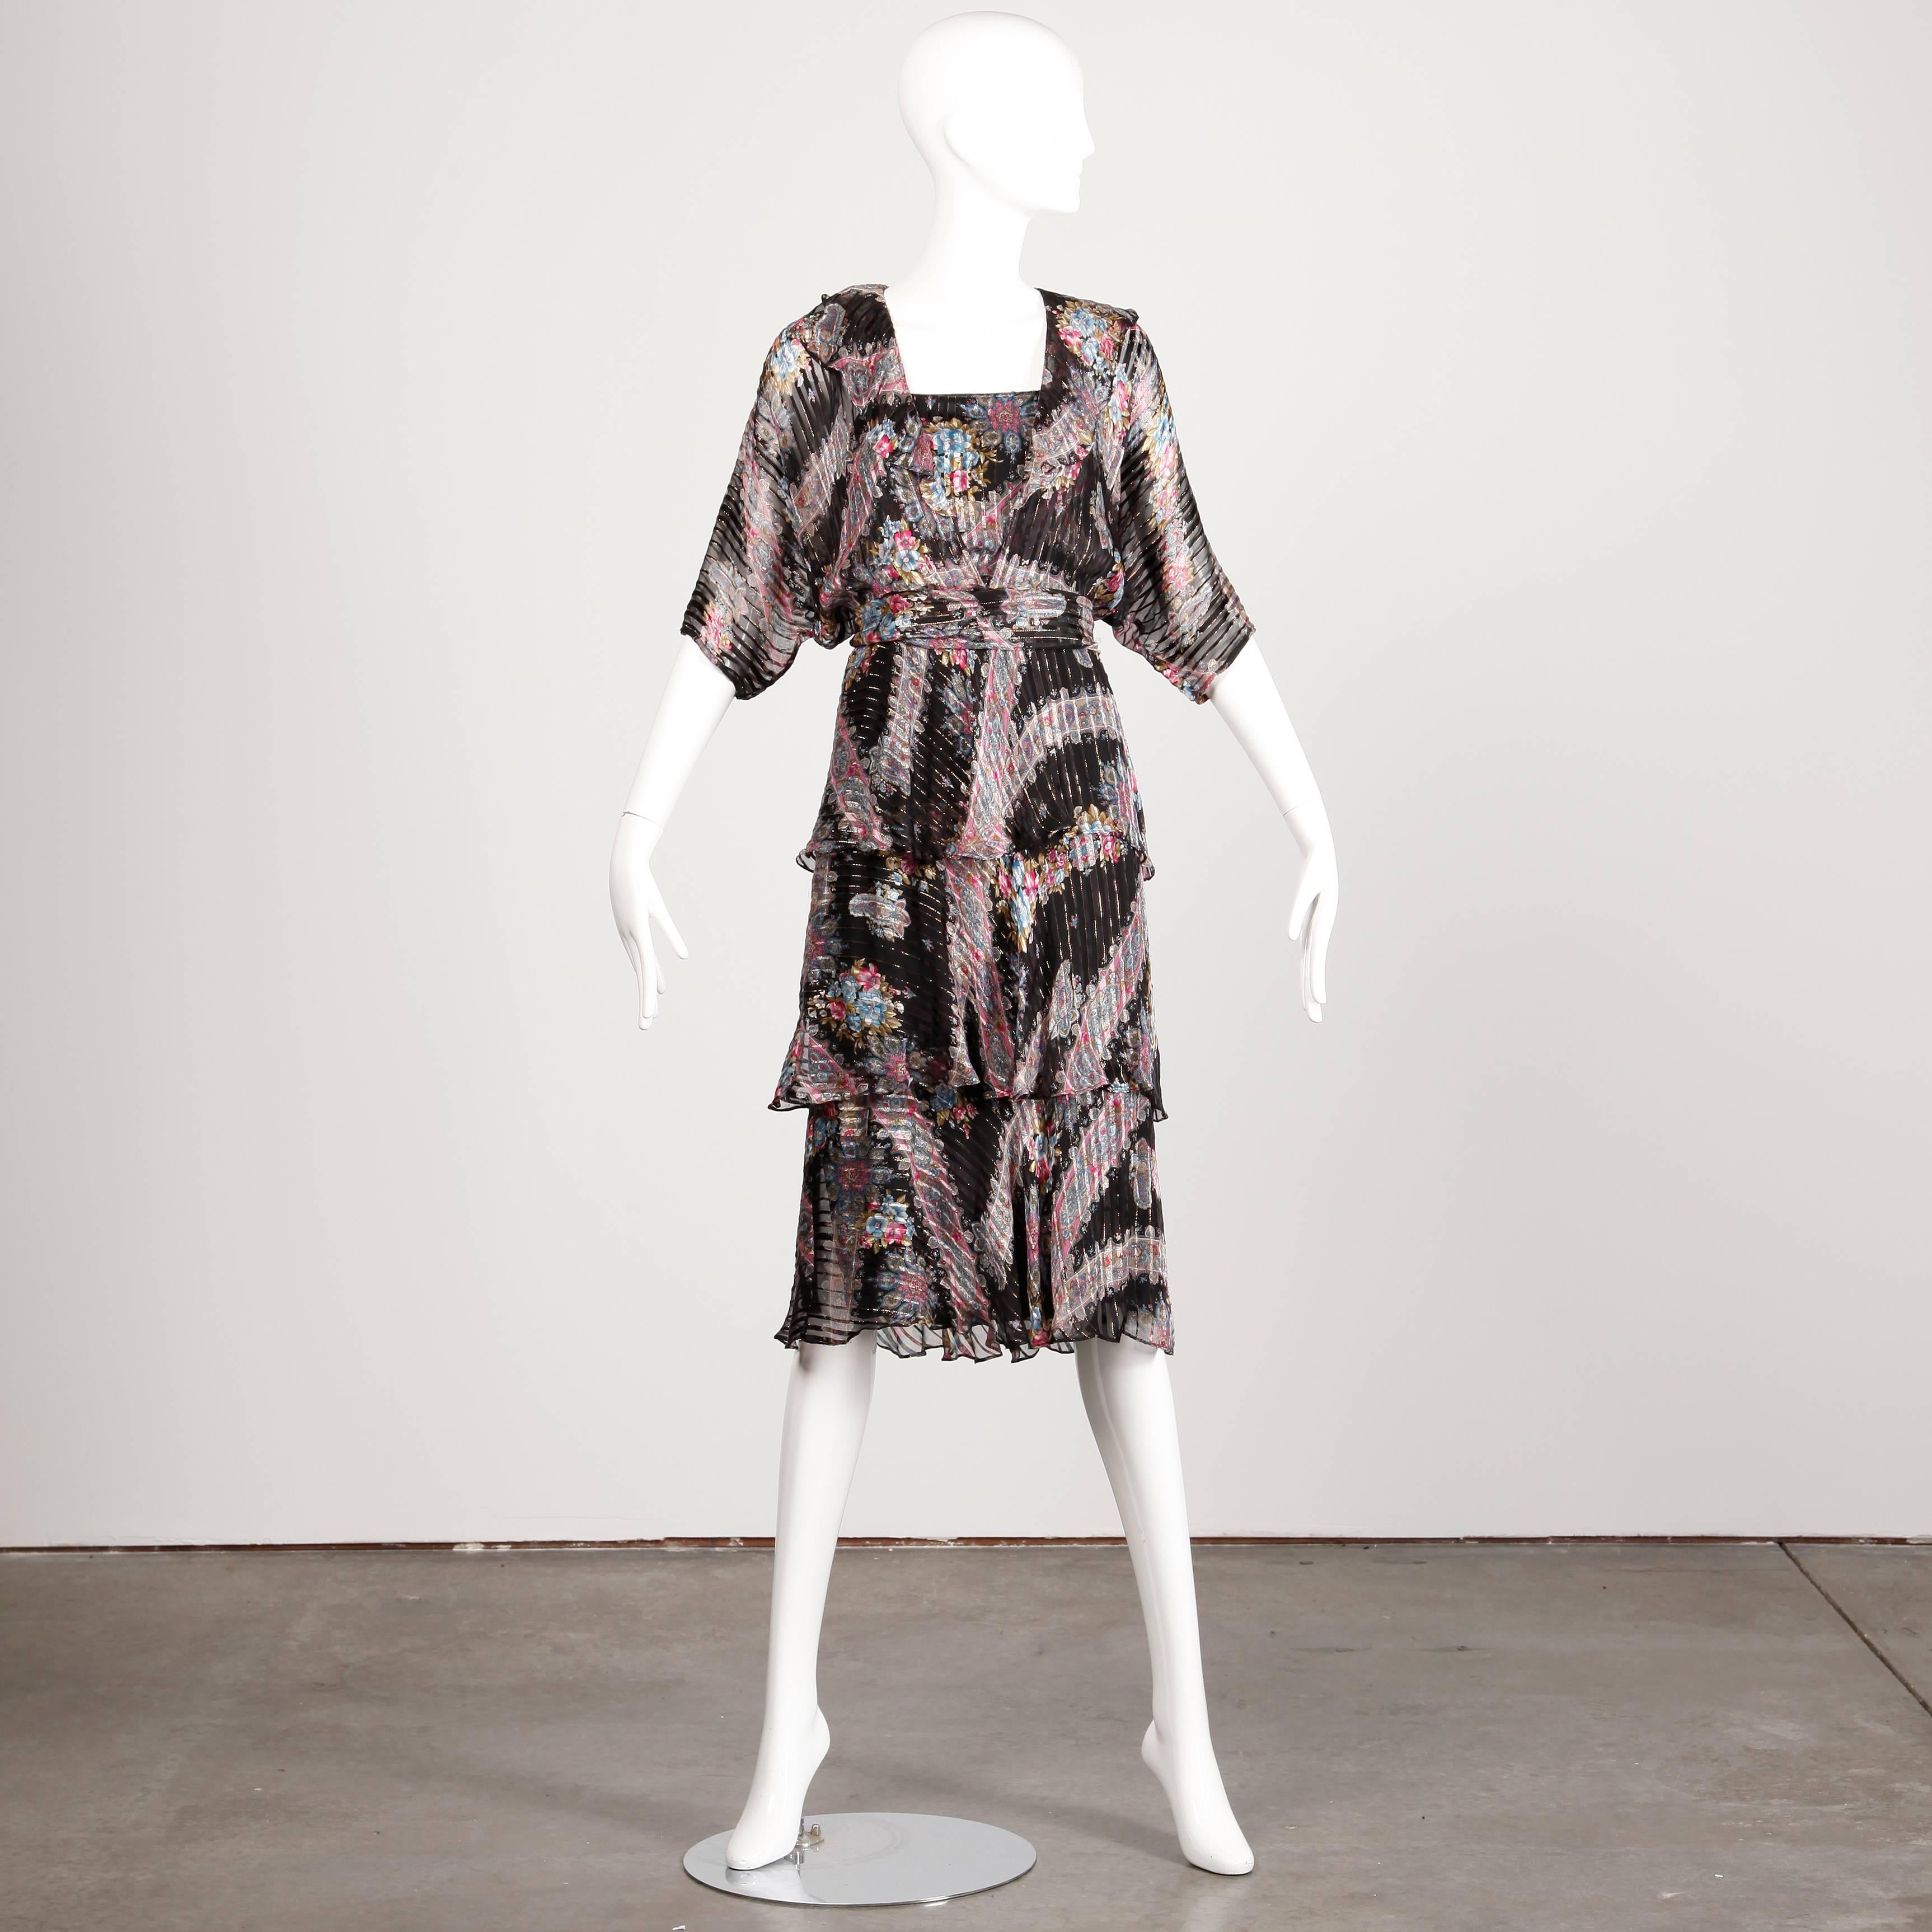 Superbe robe en soie fine mouchetée de métal avec un imprimé paisley de The Silk Farm by Icinoo. Manches Dolman et ceinture assortie. La robe est une taille marquée 4 et s'adapte comme une taille moderne petite.

Détails : 

Partiellement